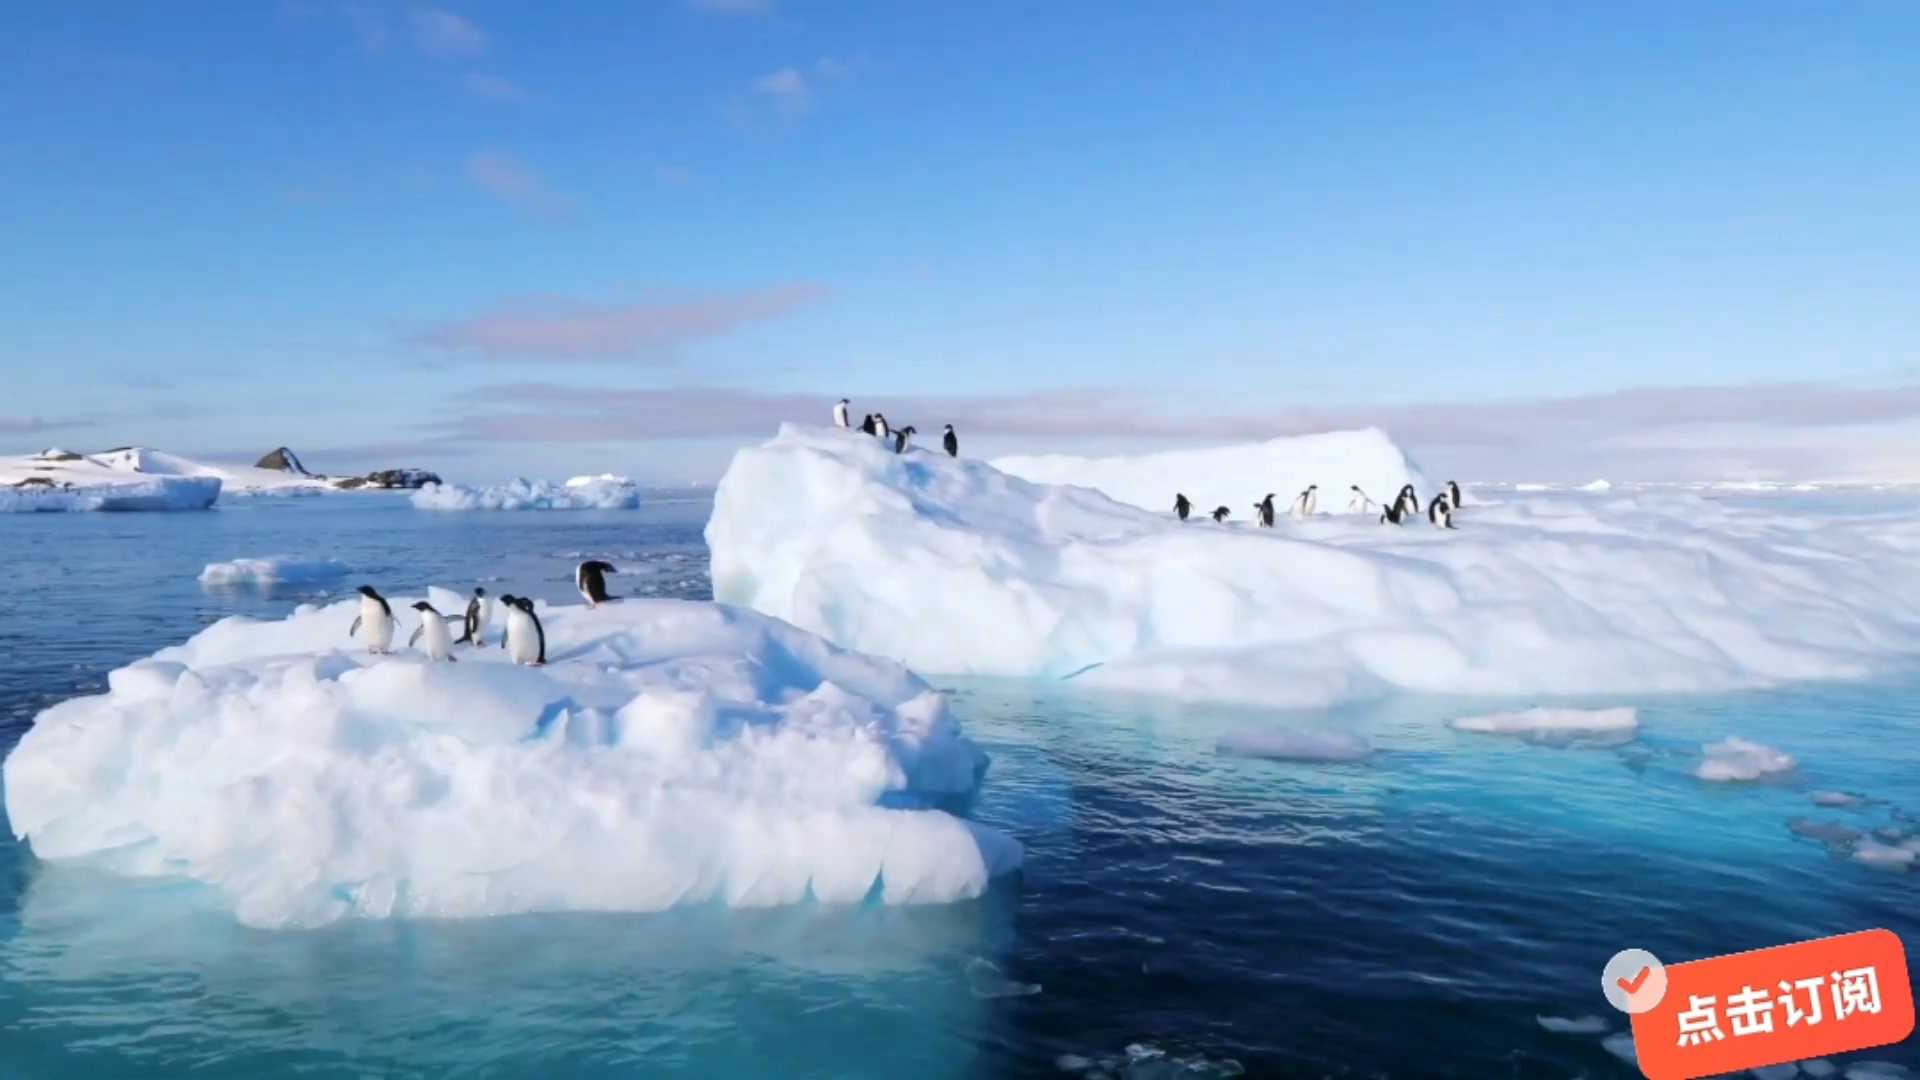 今天带你欣赏一下南极美丽的景色